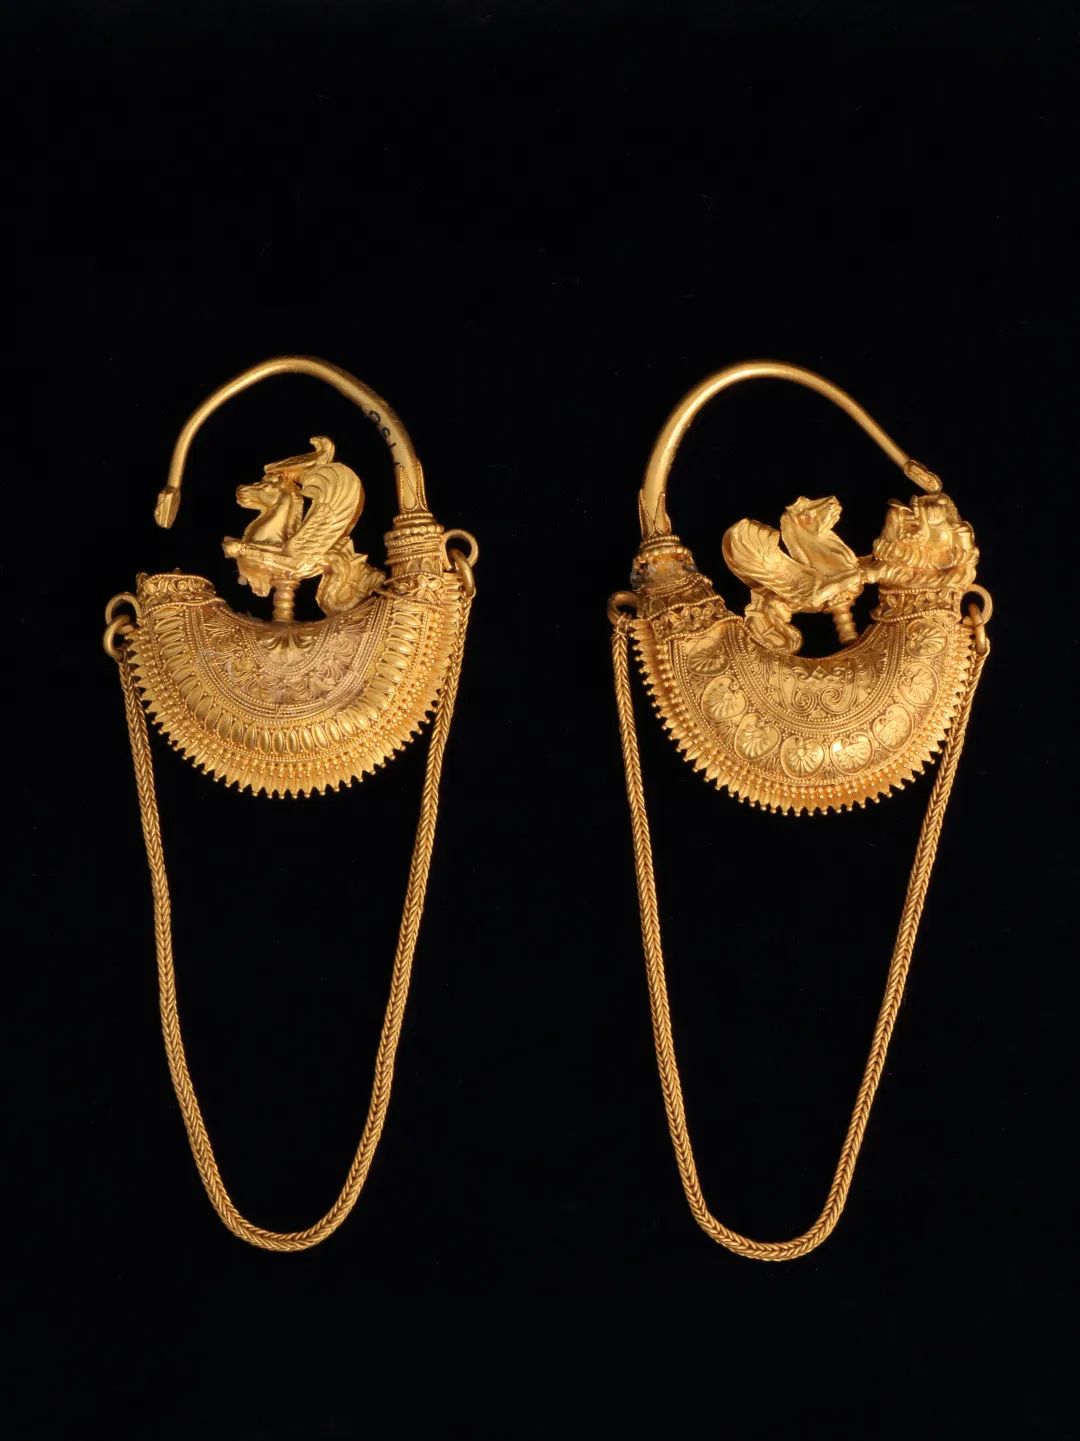 耳环一对（虚拟展出），约公元前375-前325年，黄金，霍莫莱之城（古马格尼西亚）出土，马格尼西亚古物局/沃洛斯考古博物馆藏（M 49， M 50）；图片来源：上海博物馆 耳环呈船型，尾端饰有金丝细工的狮首，船身上栖息有翼海马和小鸟。耳环以前后两半构成，上下端接合处均覆盖一排排细密的金珠颗粒。海马由前后两片金箔制成，经过切割并以浅浮雕装饰，狮首则是单独制作的。长金链松散地垂下，两端由靠近船顶部的圆环固定